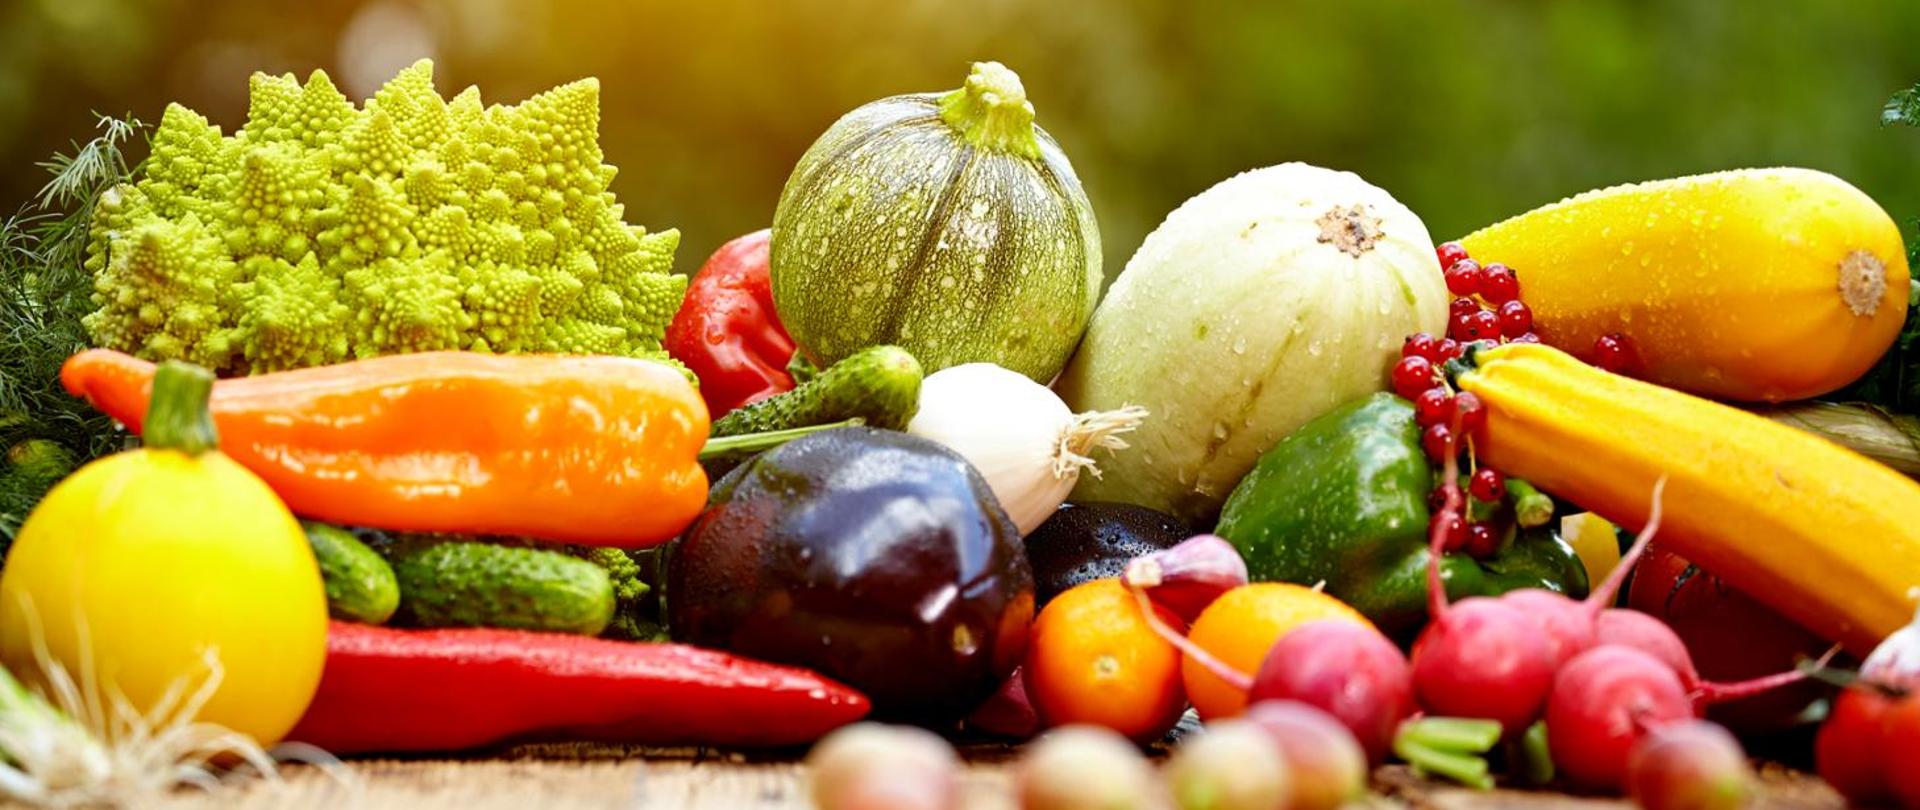 Obraz przedstawia różne warzywa i owoce